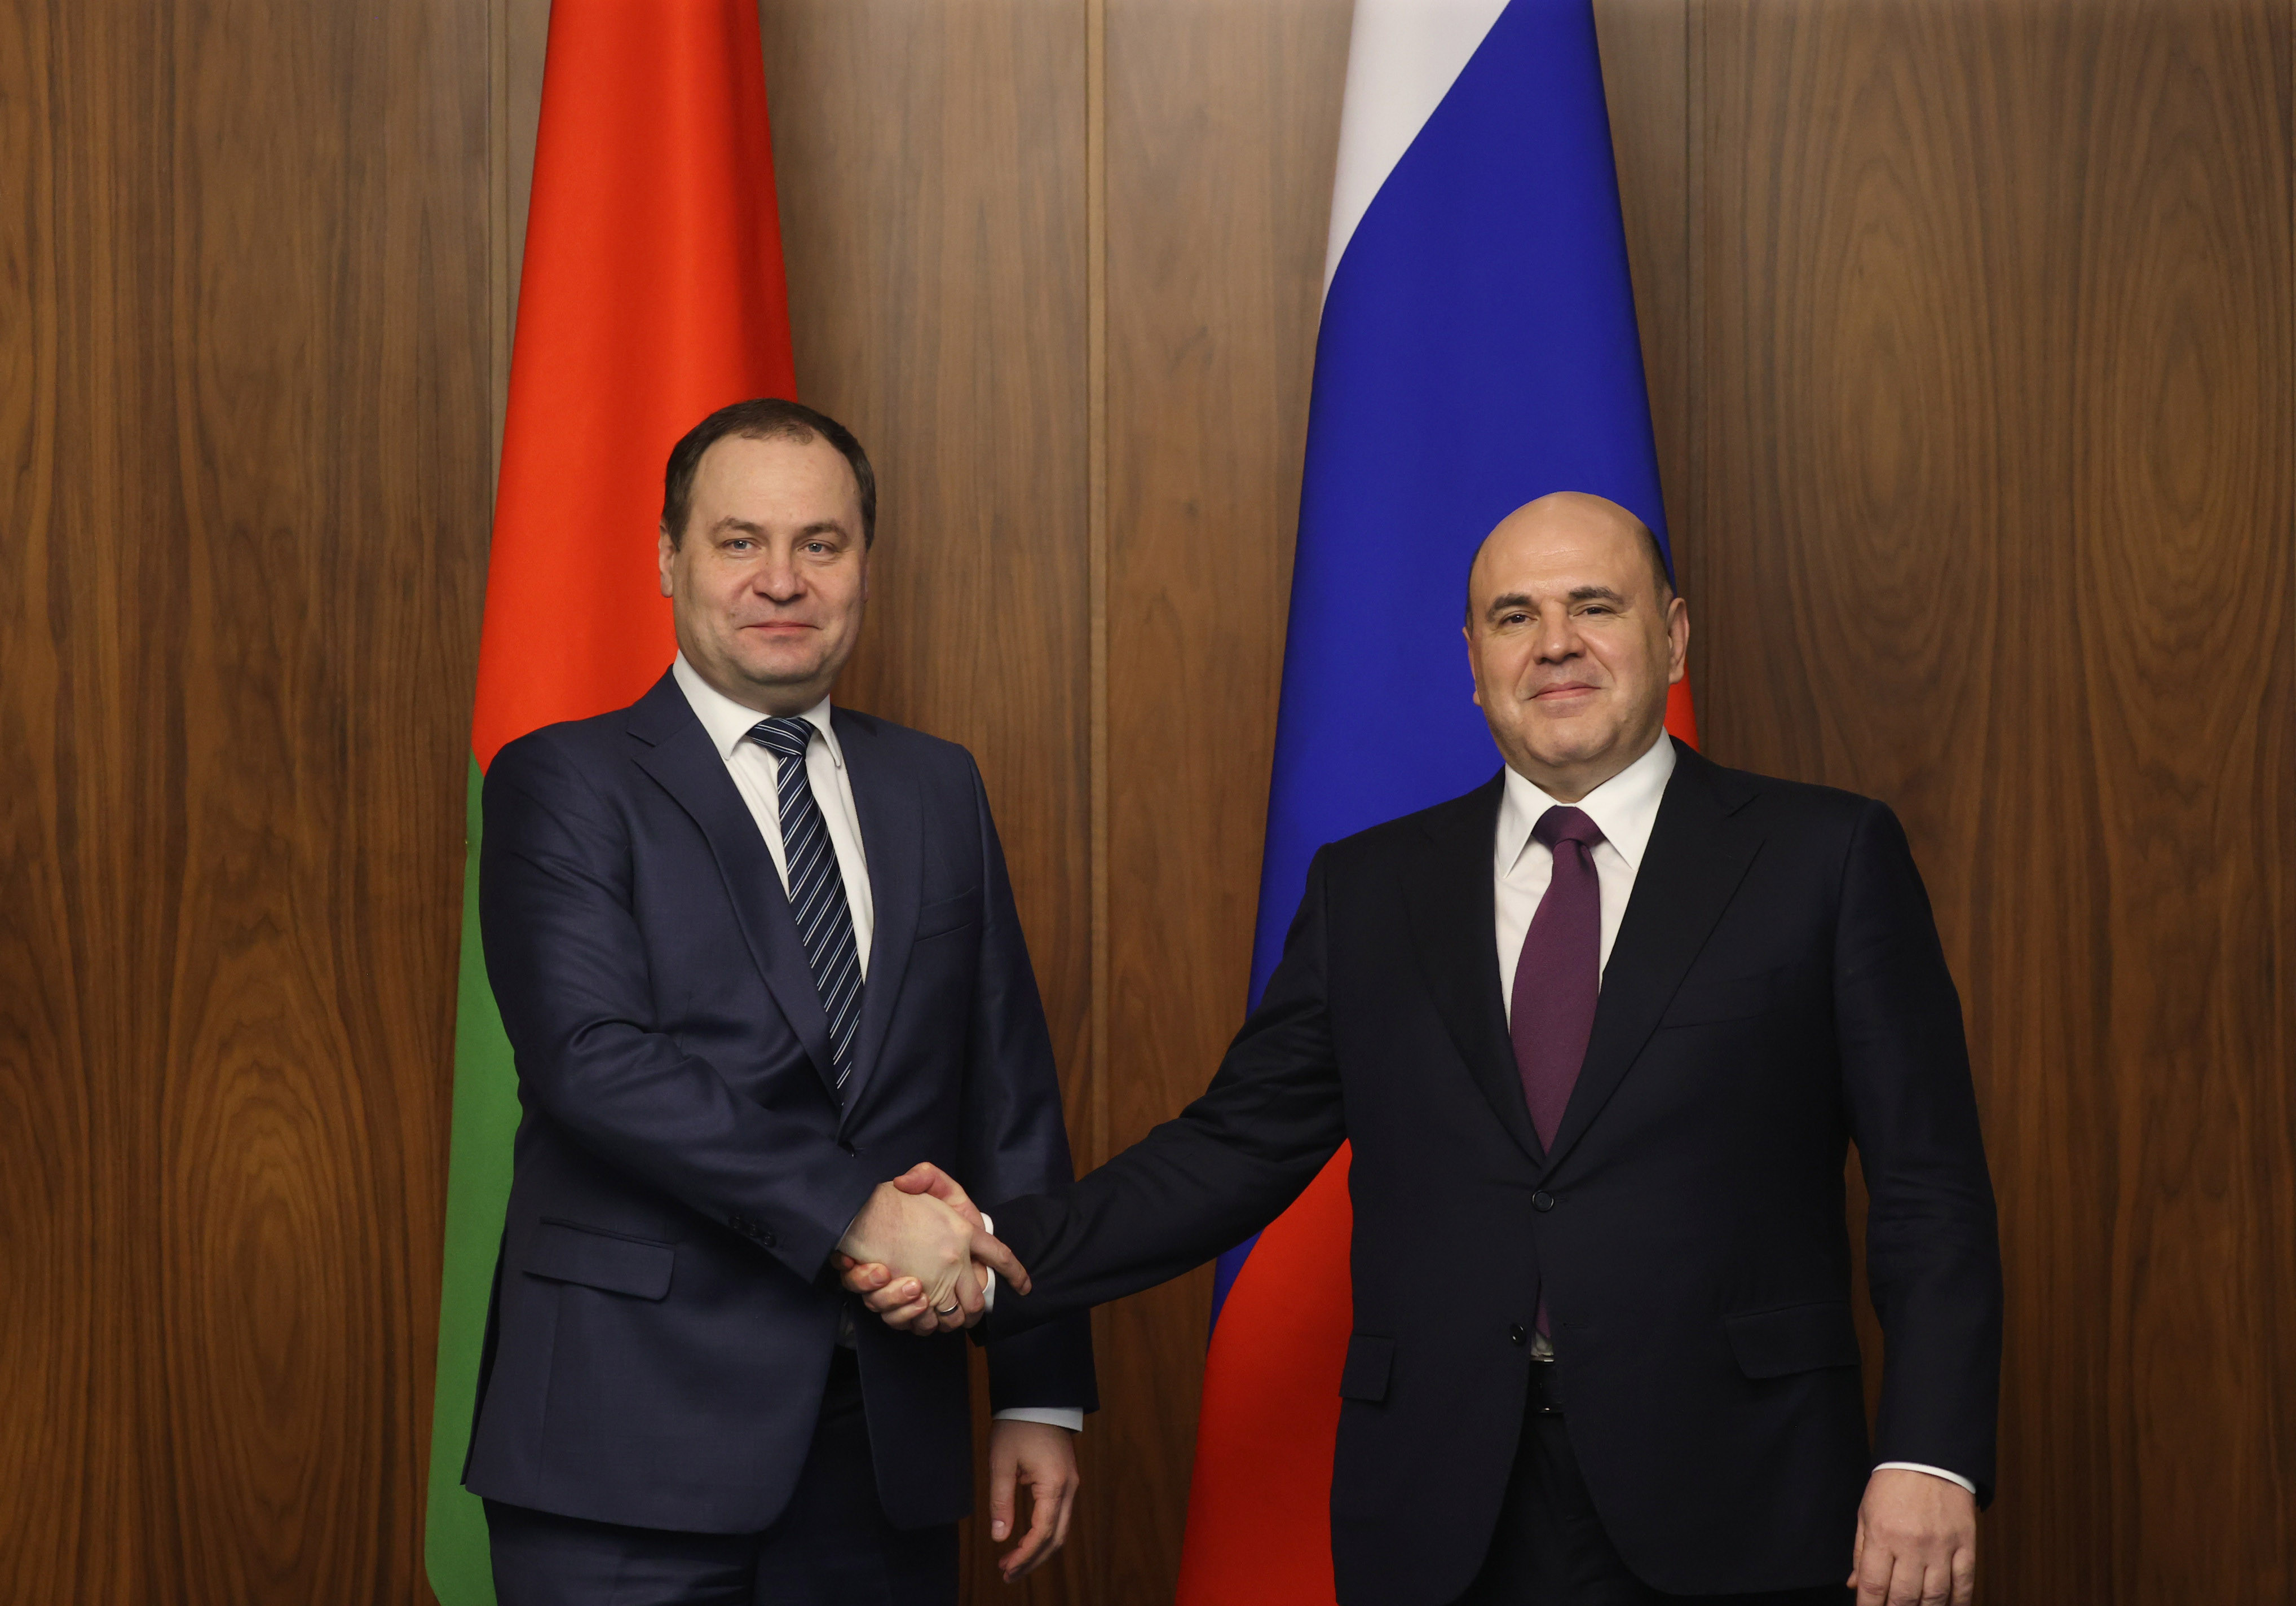 Встреча глав правительств России и Беларуси состоялась на полях заседания Евразийского межправительственного совета